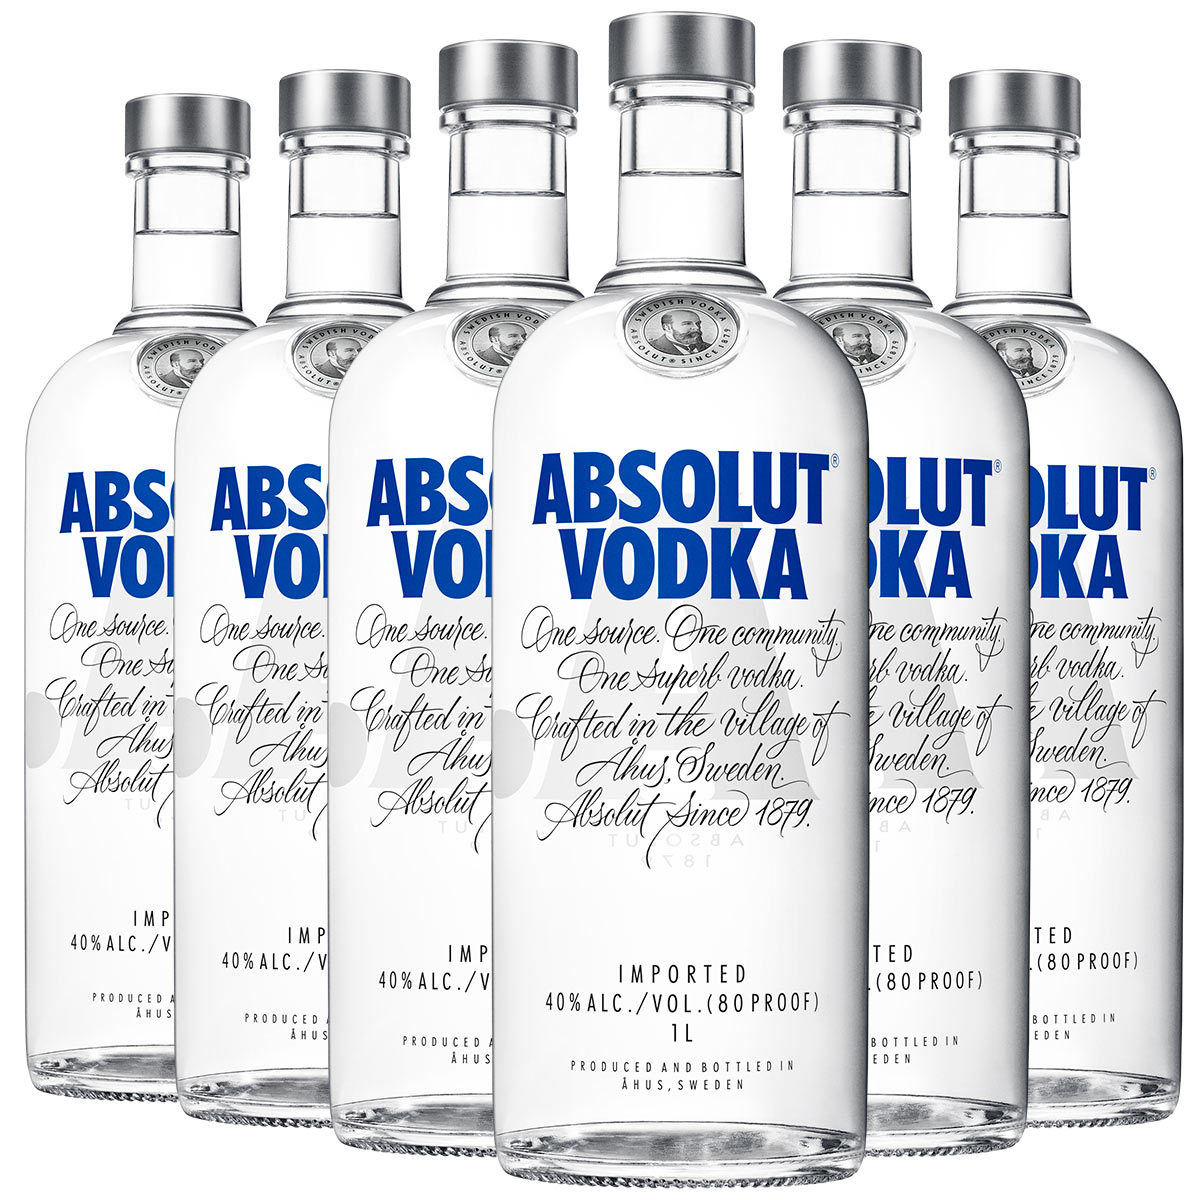 Absolut Original Swedish Vodka, 6 x 1L